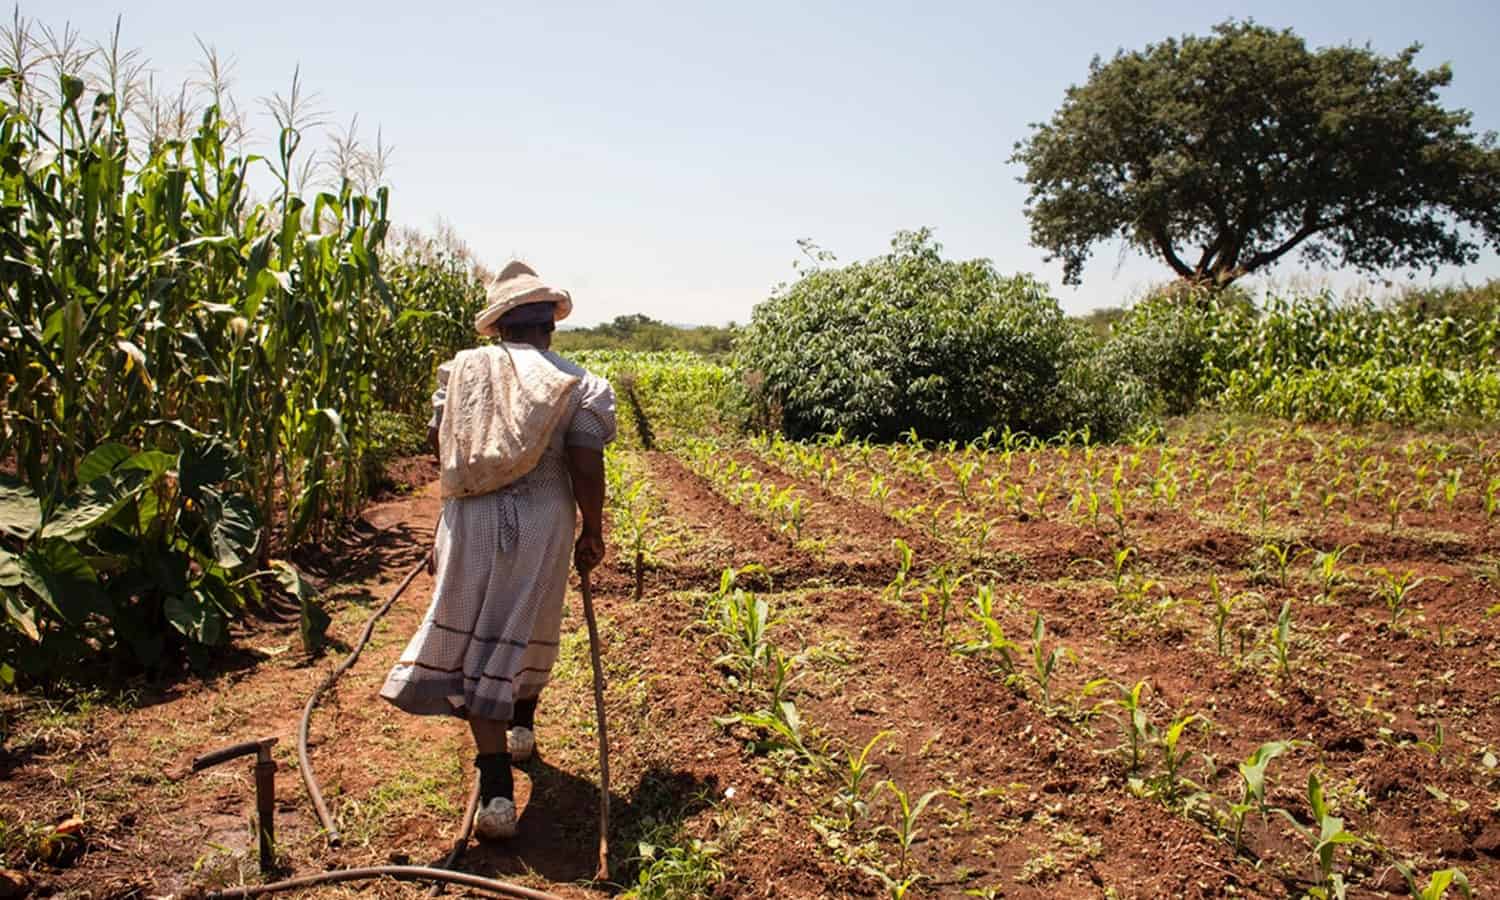 联合国粮农组织提供指导和资源下降粘虫出没的地区在非洲援助粮食安全。